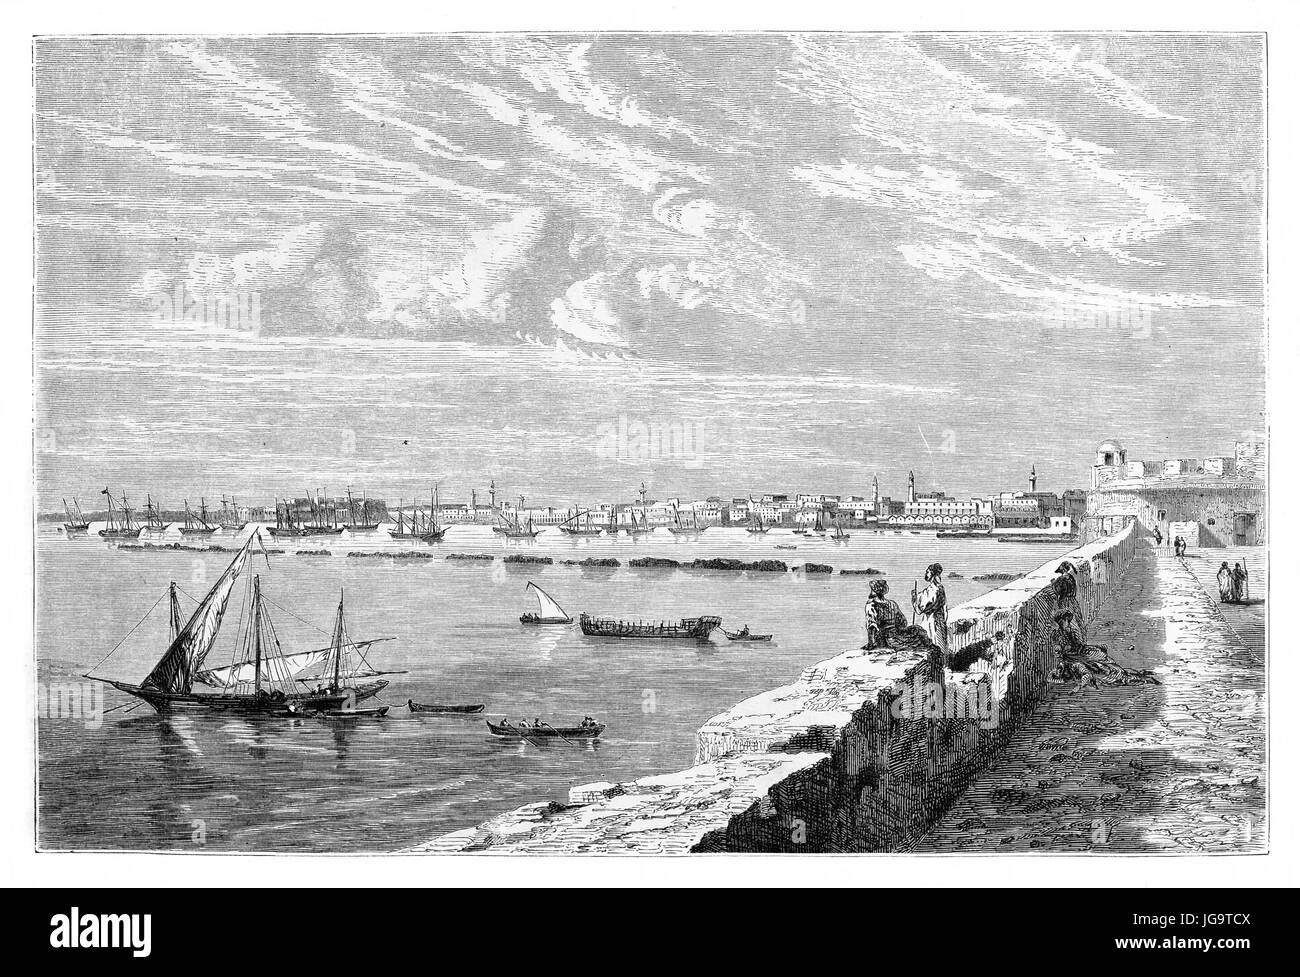 Tripoli paysage urbain et une partie du terrain aride environnant, Libye. Art de style gravure de tons gris anciens par Lancelot, publié le Tour du monde 1861 Banque D'Images